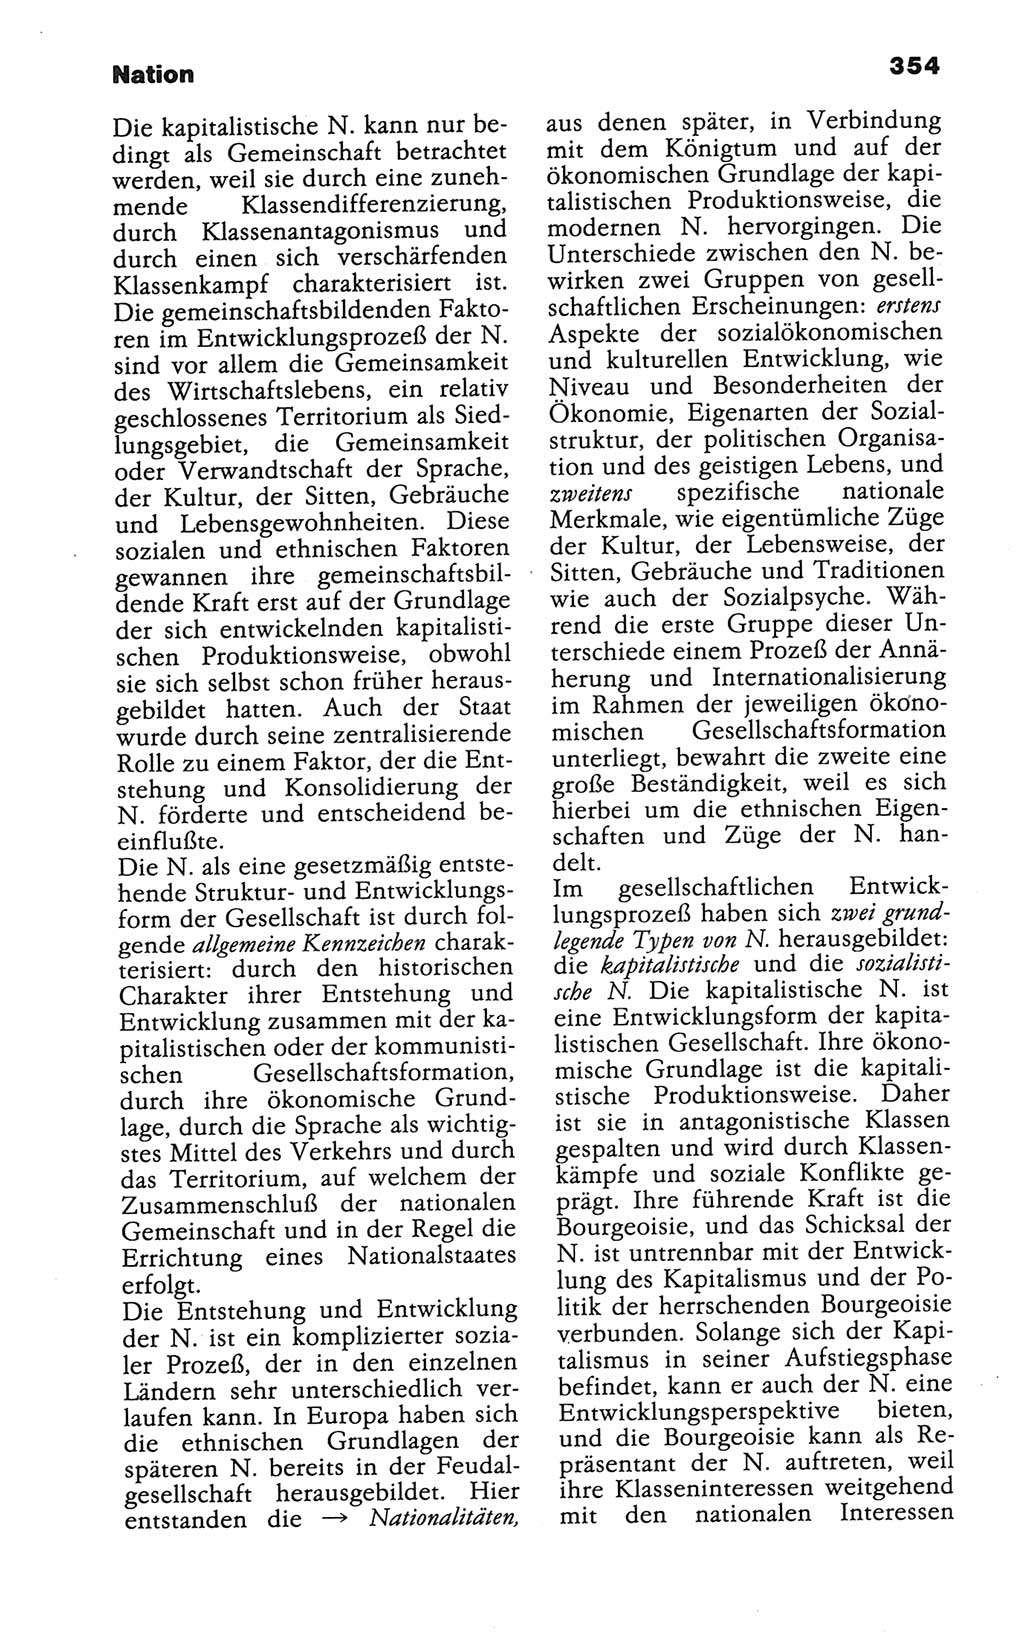 Wörterbuch der marxistisch-leninistischen Philosophie [Deutsche Demokratische Republik (DDR)] 1986, Seite 354 (Wb. ML Phil. DDR 1986, S. 354)